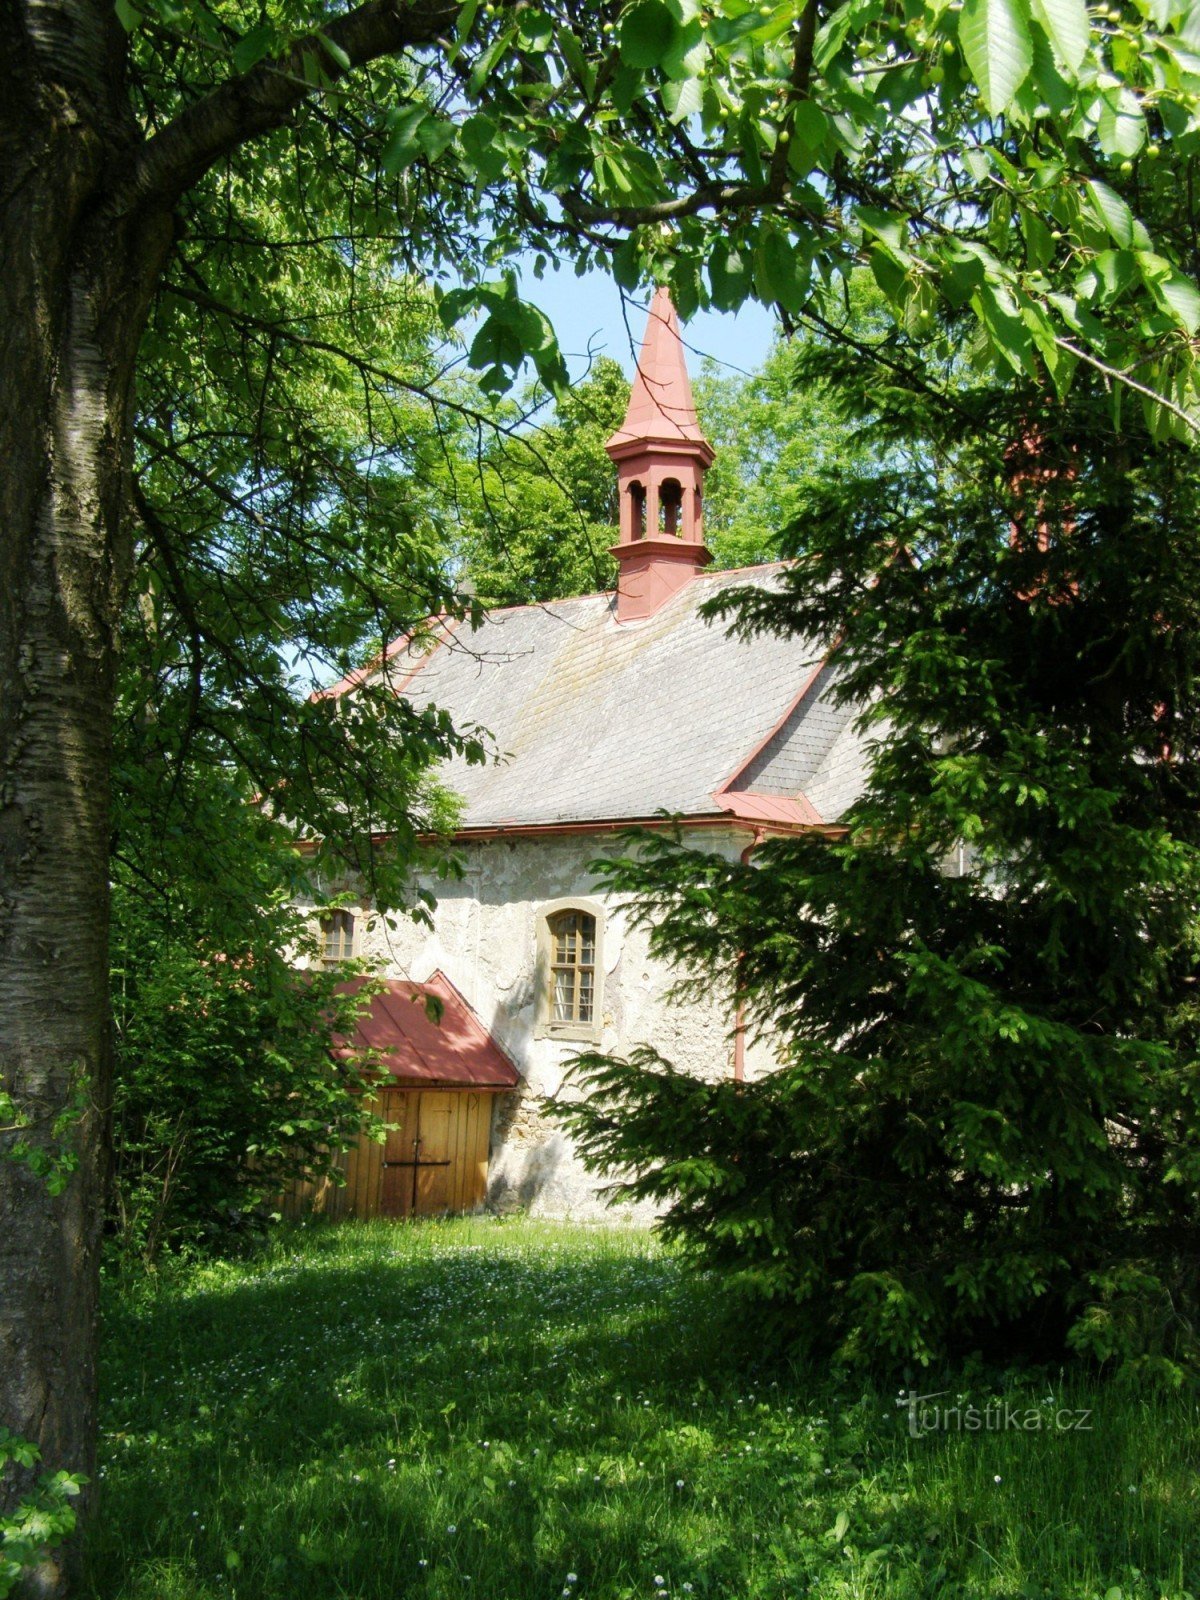 Бела - церковь с колокольней